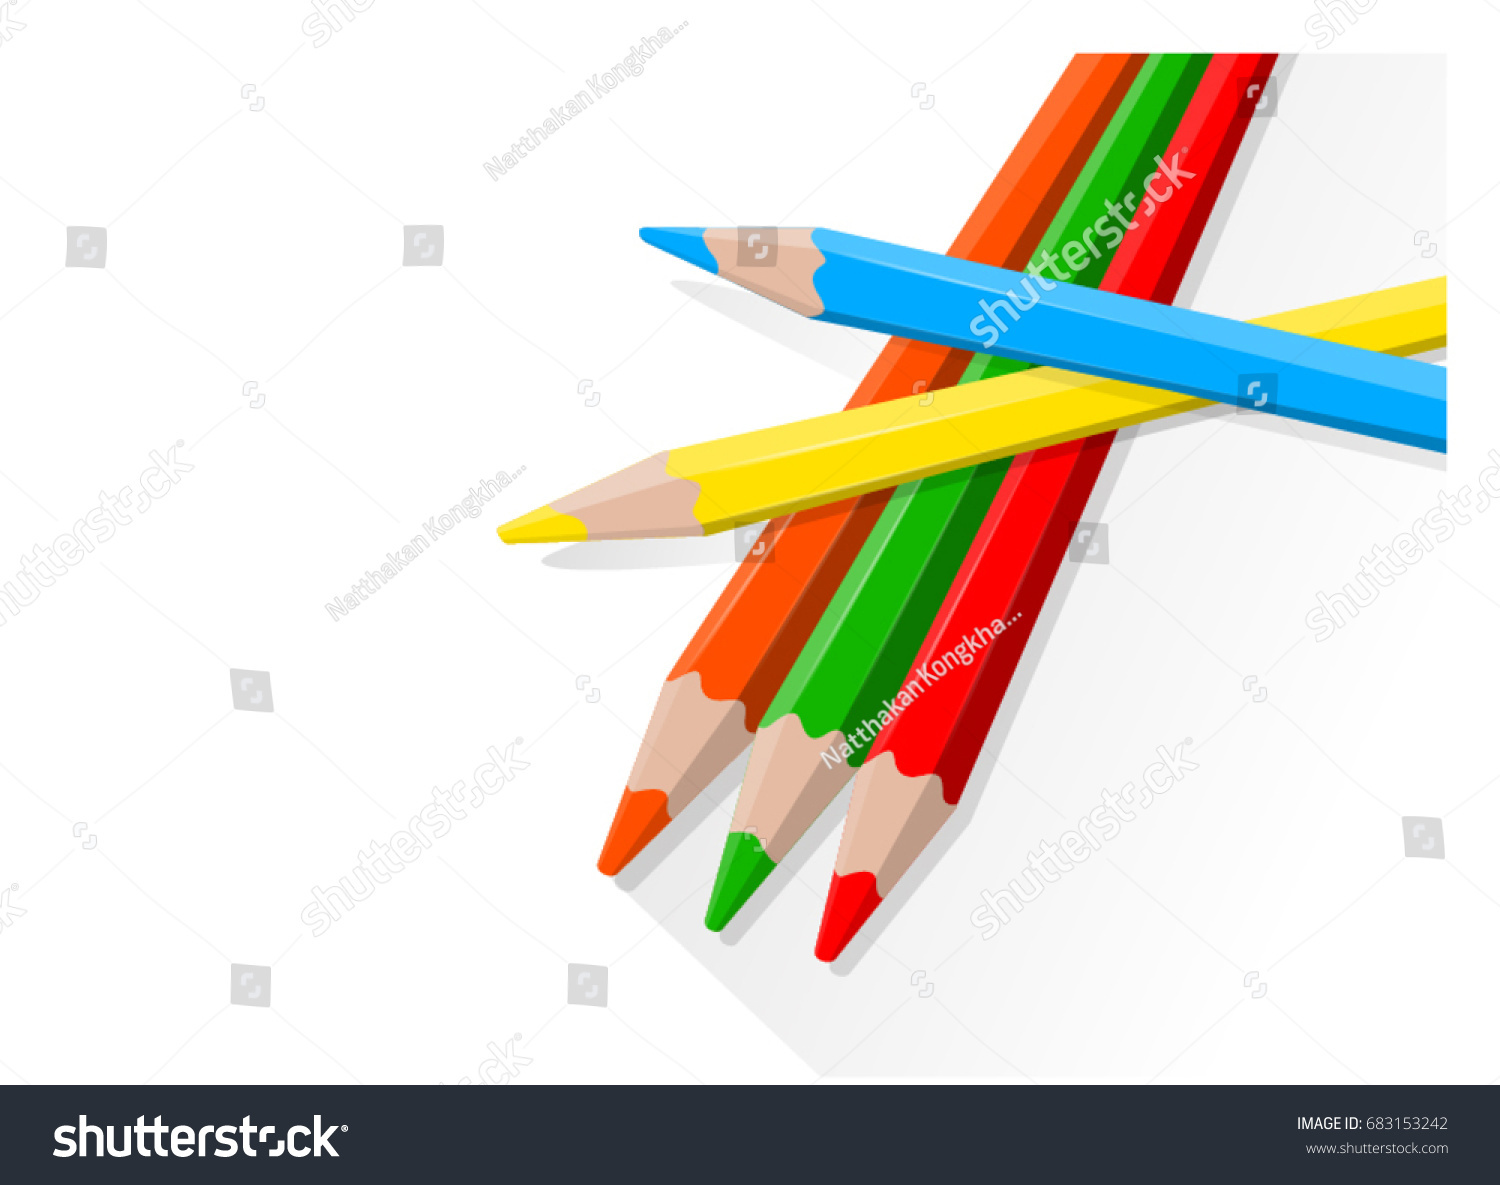 Color pencils #683153242